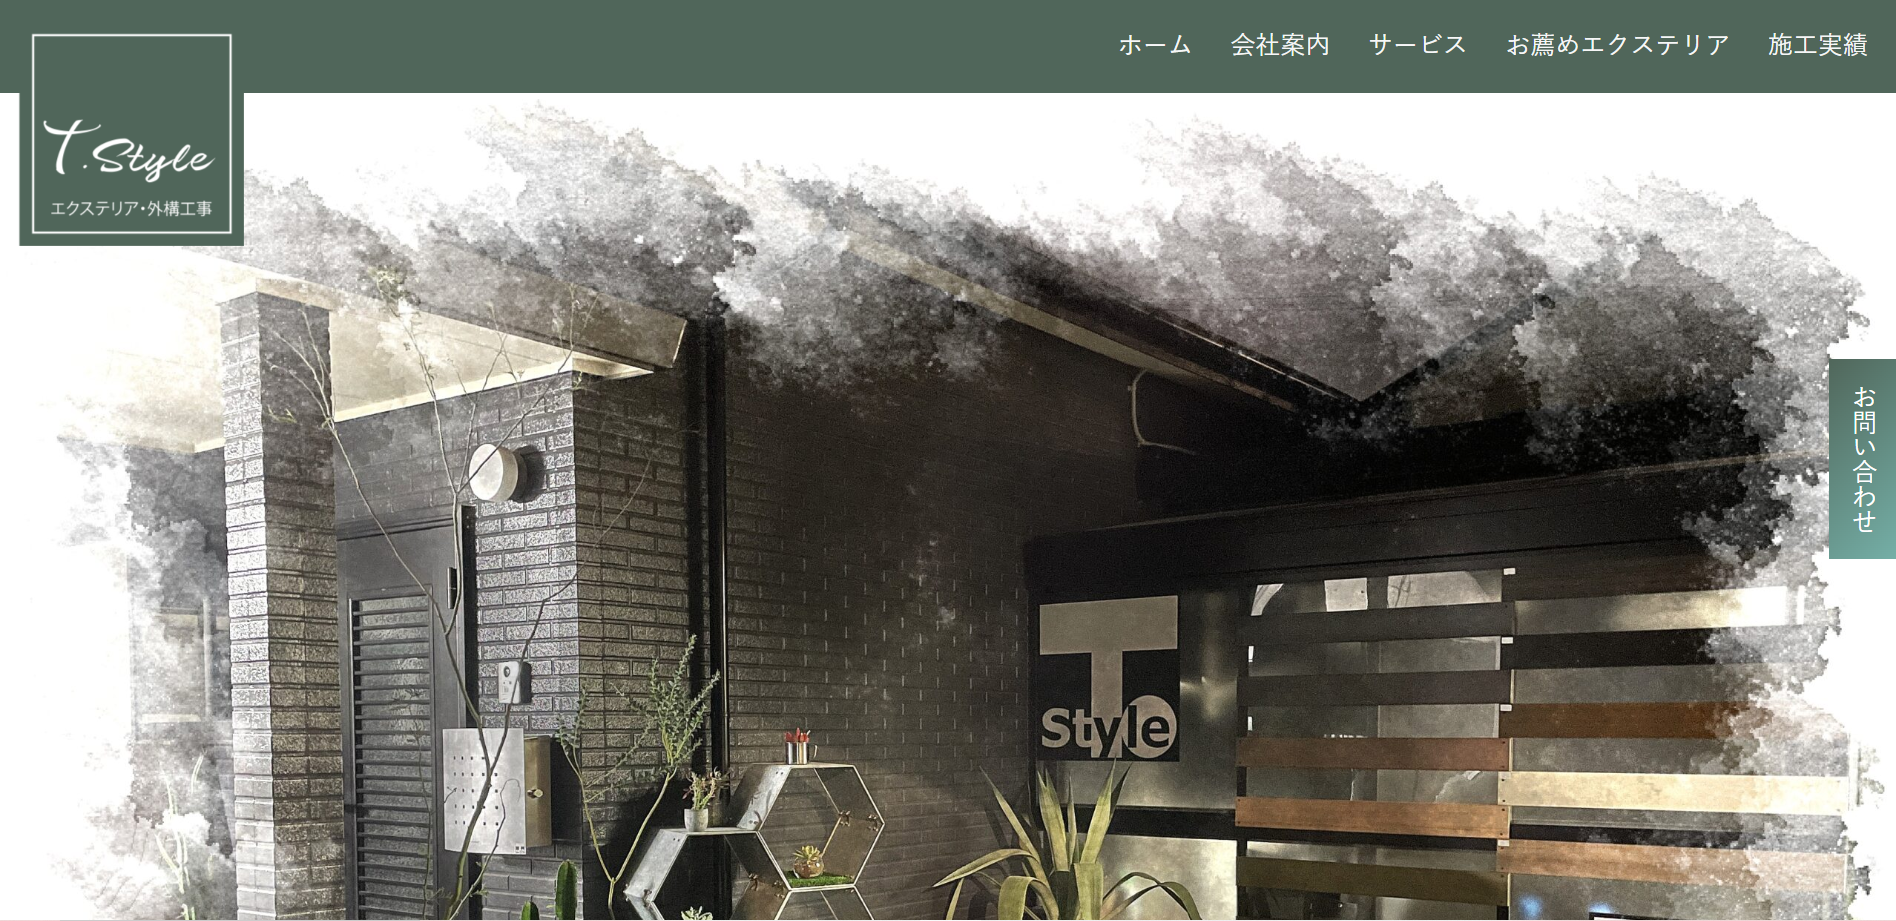  熊本県で評判のおすすめ外構業者ランキング 第10位 T.Style 株式会社